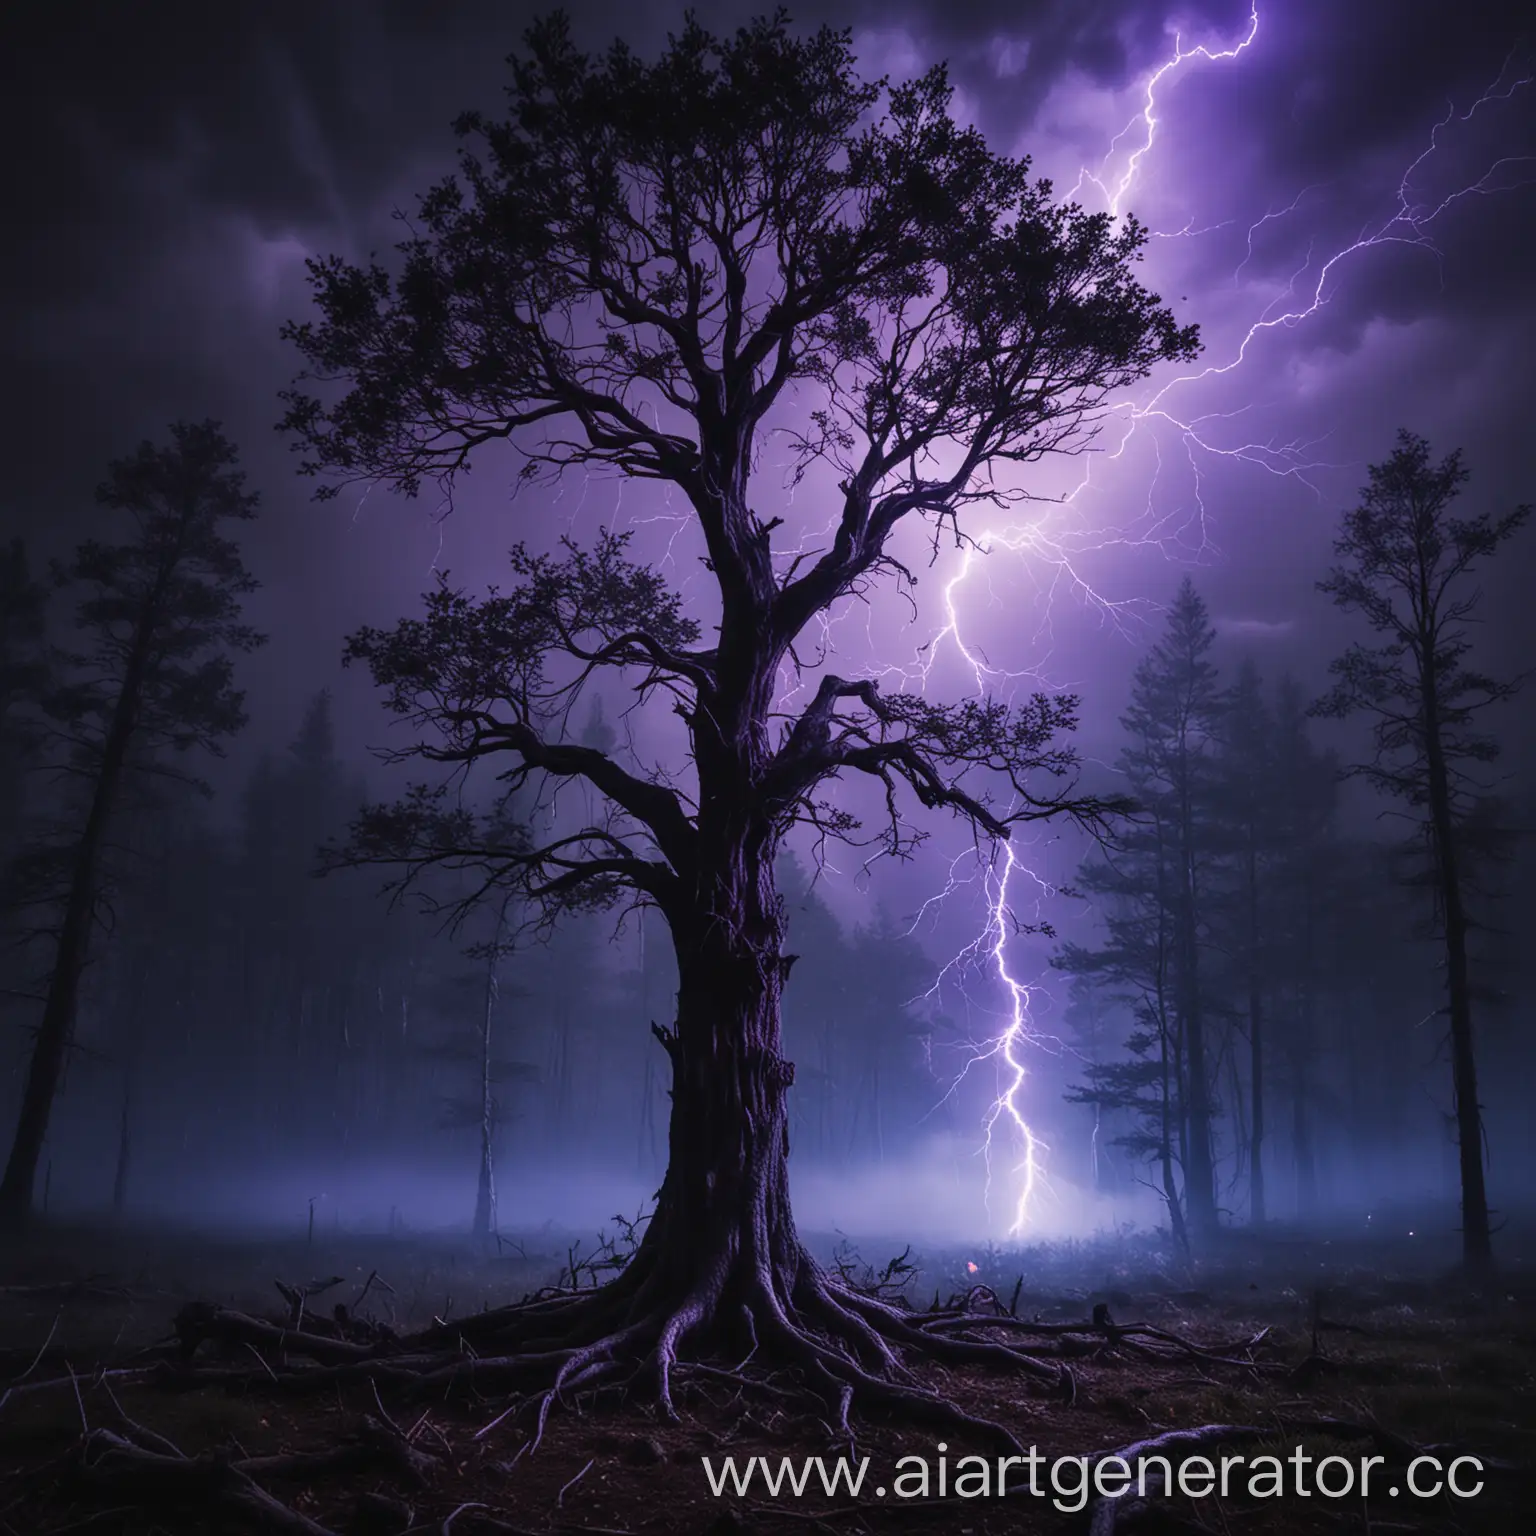 темное дерево в темном лесу где ударило феолетовая молния  